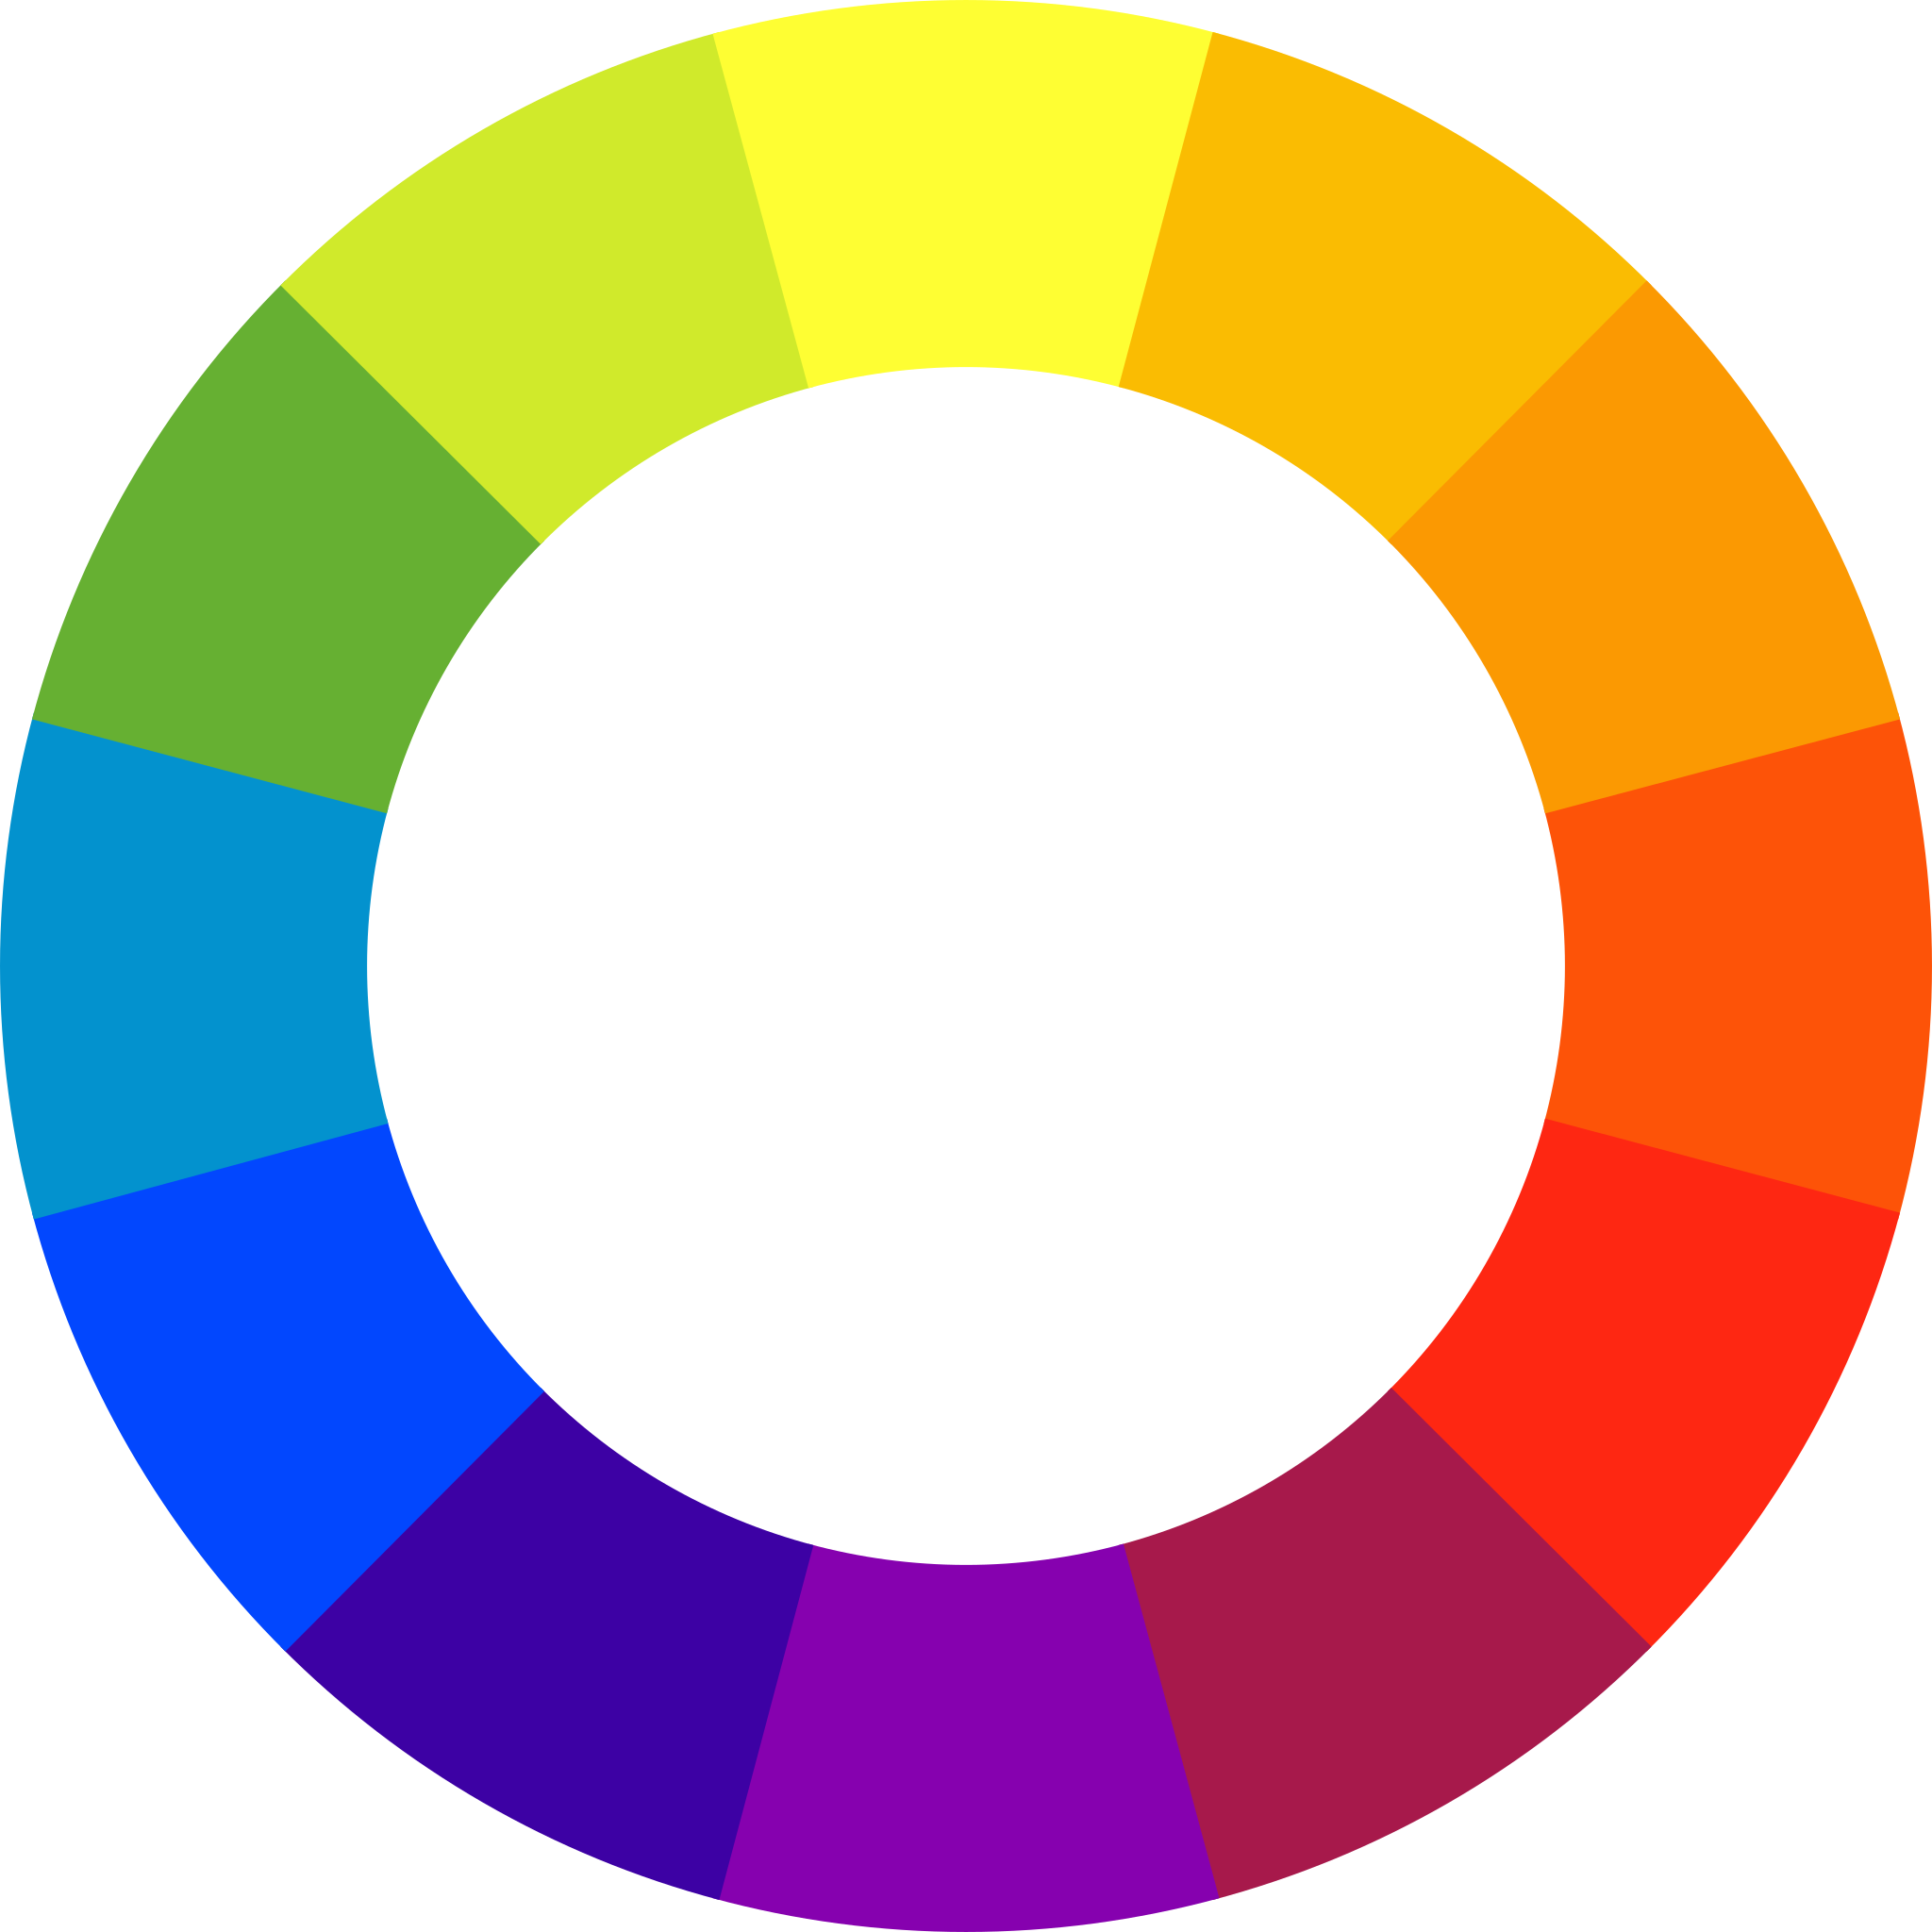 Цветовой круг Иттена Триада. Иоханнес Иттен цветовой круг. Иоганнес Иттен цветовой круг. Цветовой круг Иоханнеса Иттена.